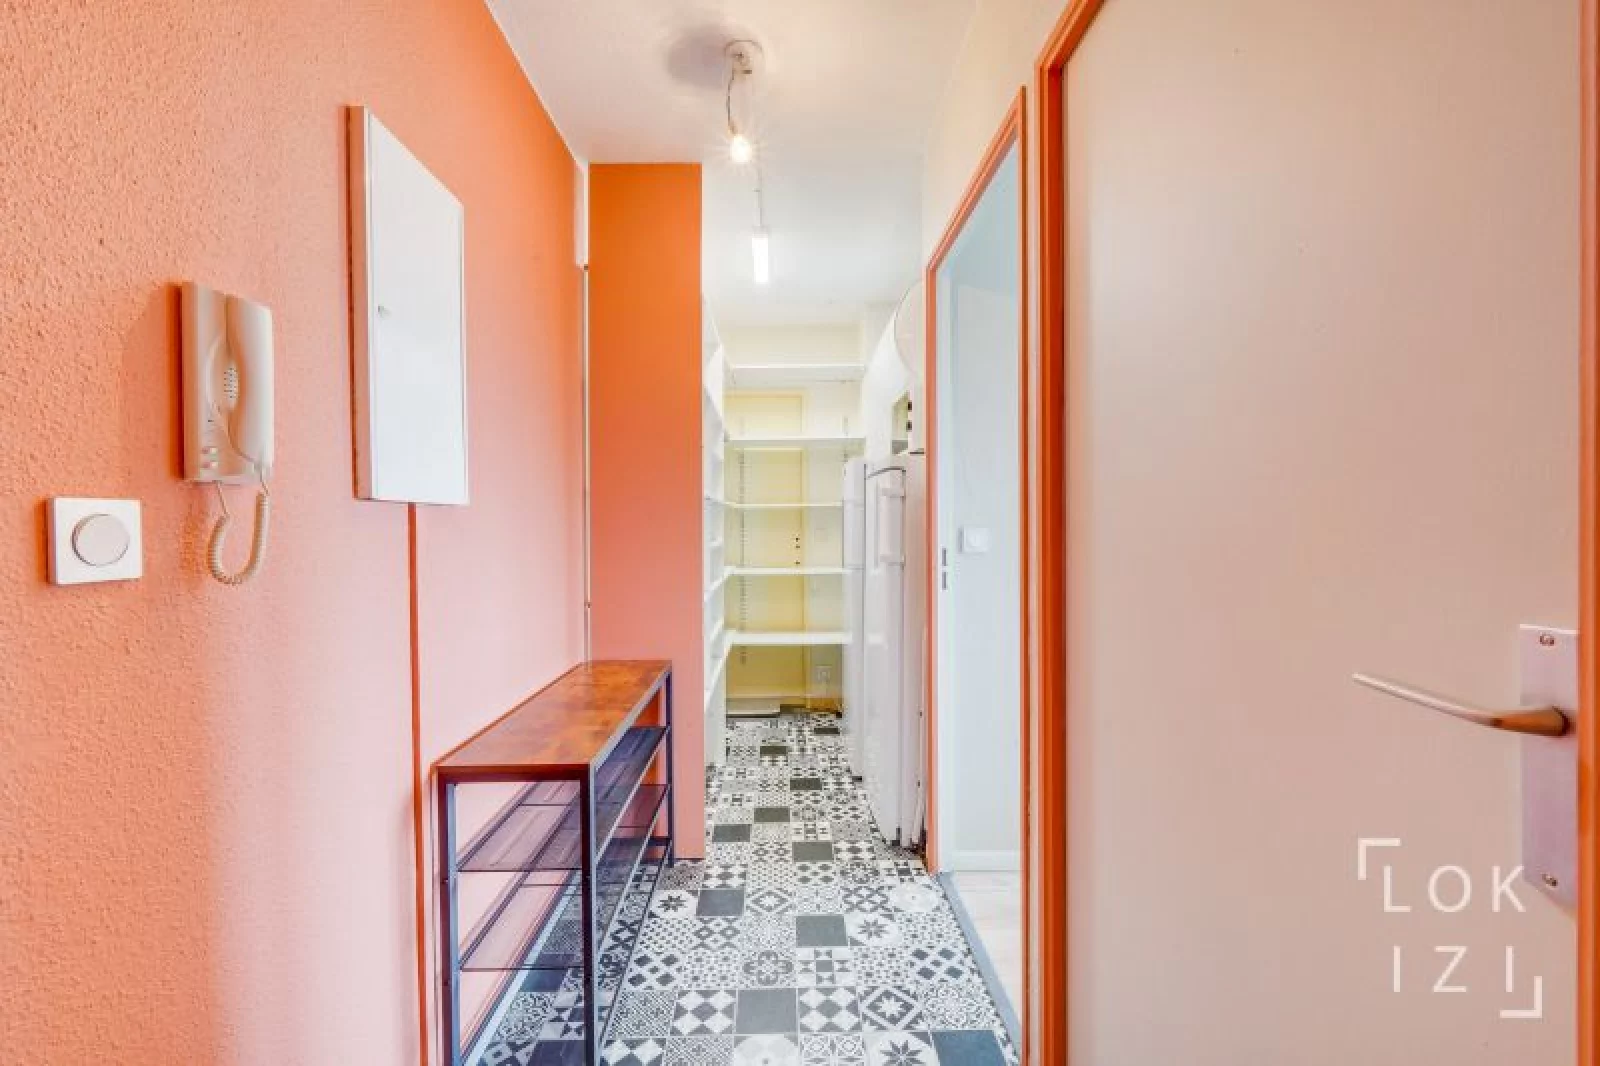 Location appartement meublé 3 pièces 61m² (Bordeaux - Barrière de Toulouse)